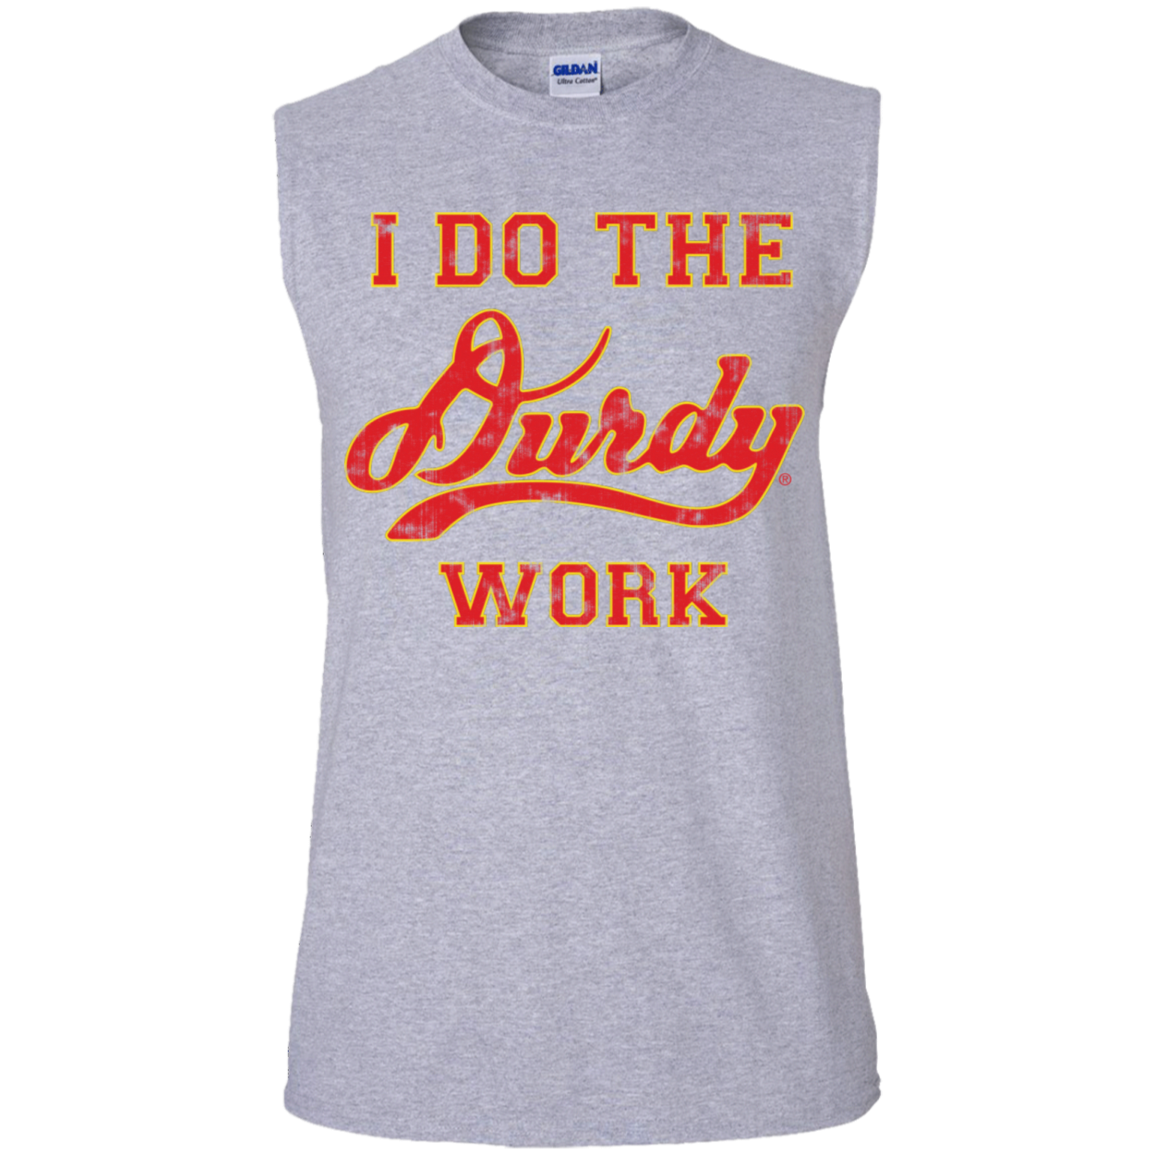 Durdy Work Gildan Men's Ultra Cotton Sleeveless T-Shirt